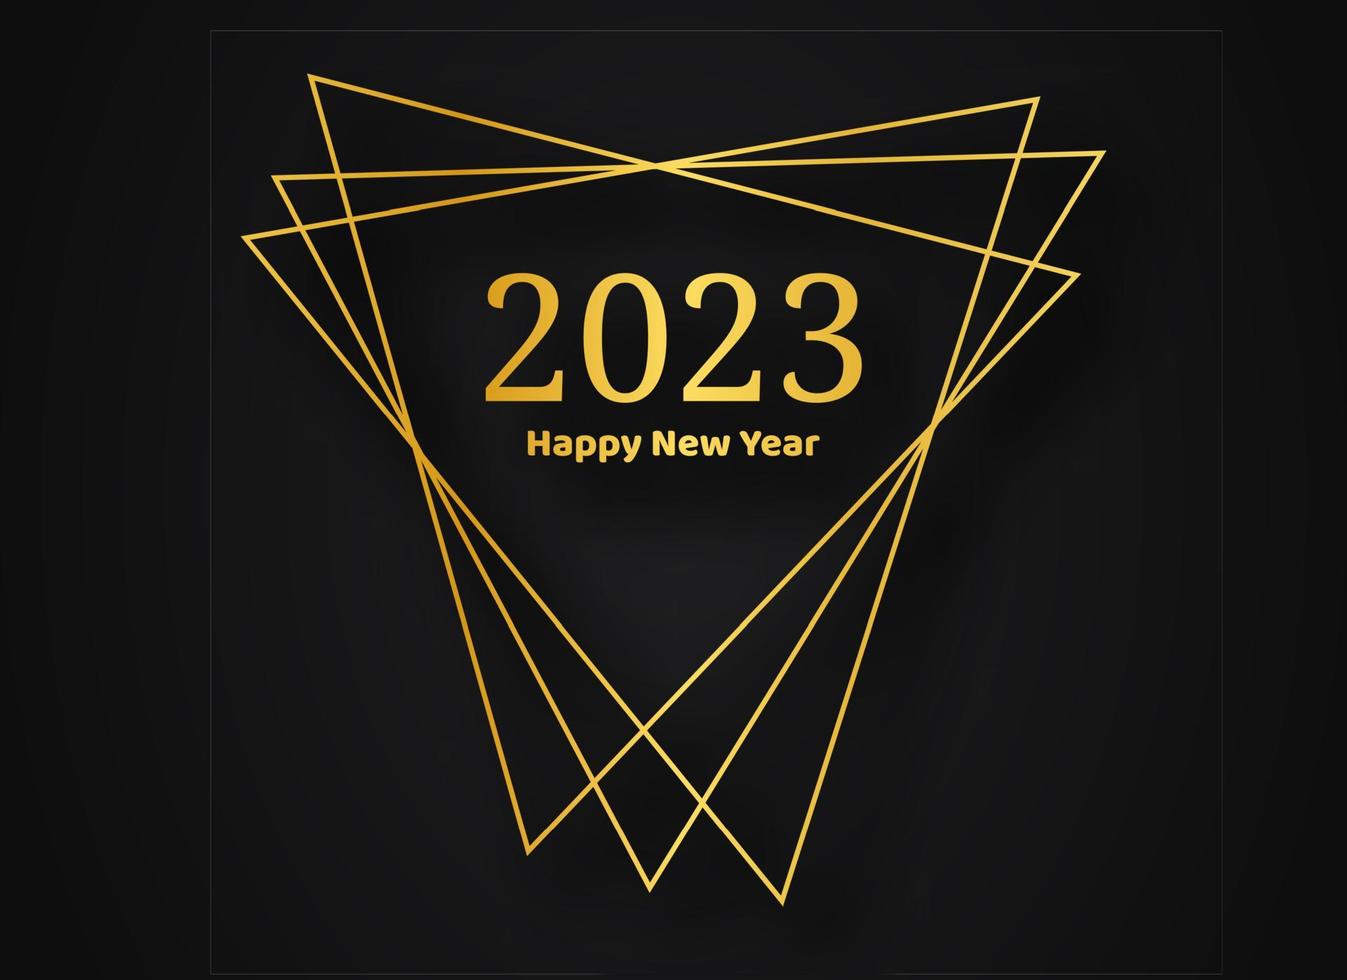 2023 feliz ano novo ouro fundo poligonal geométrico. moldura poligonal geométrica dourada com efeitos brilhantes para cartão de saudação de feriado de natal, folhetos ou cartazes. ilustração vetorial vetor